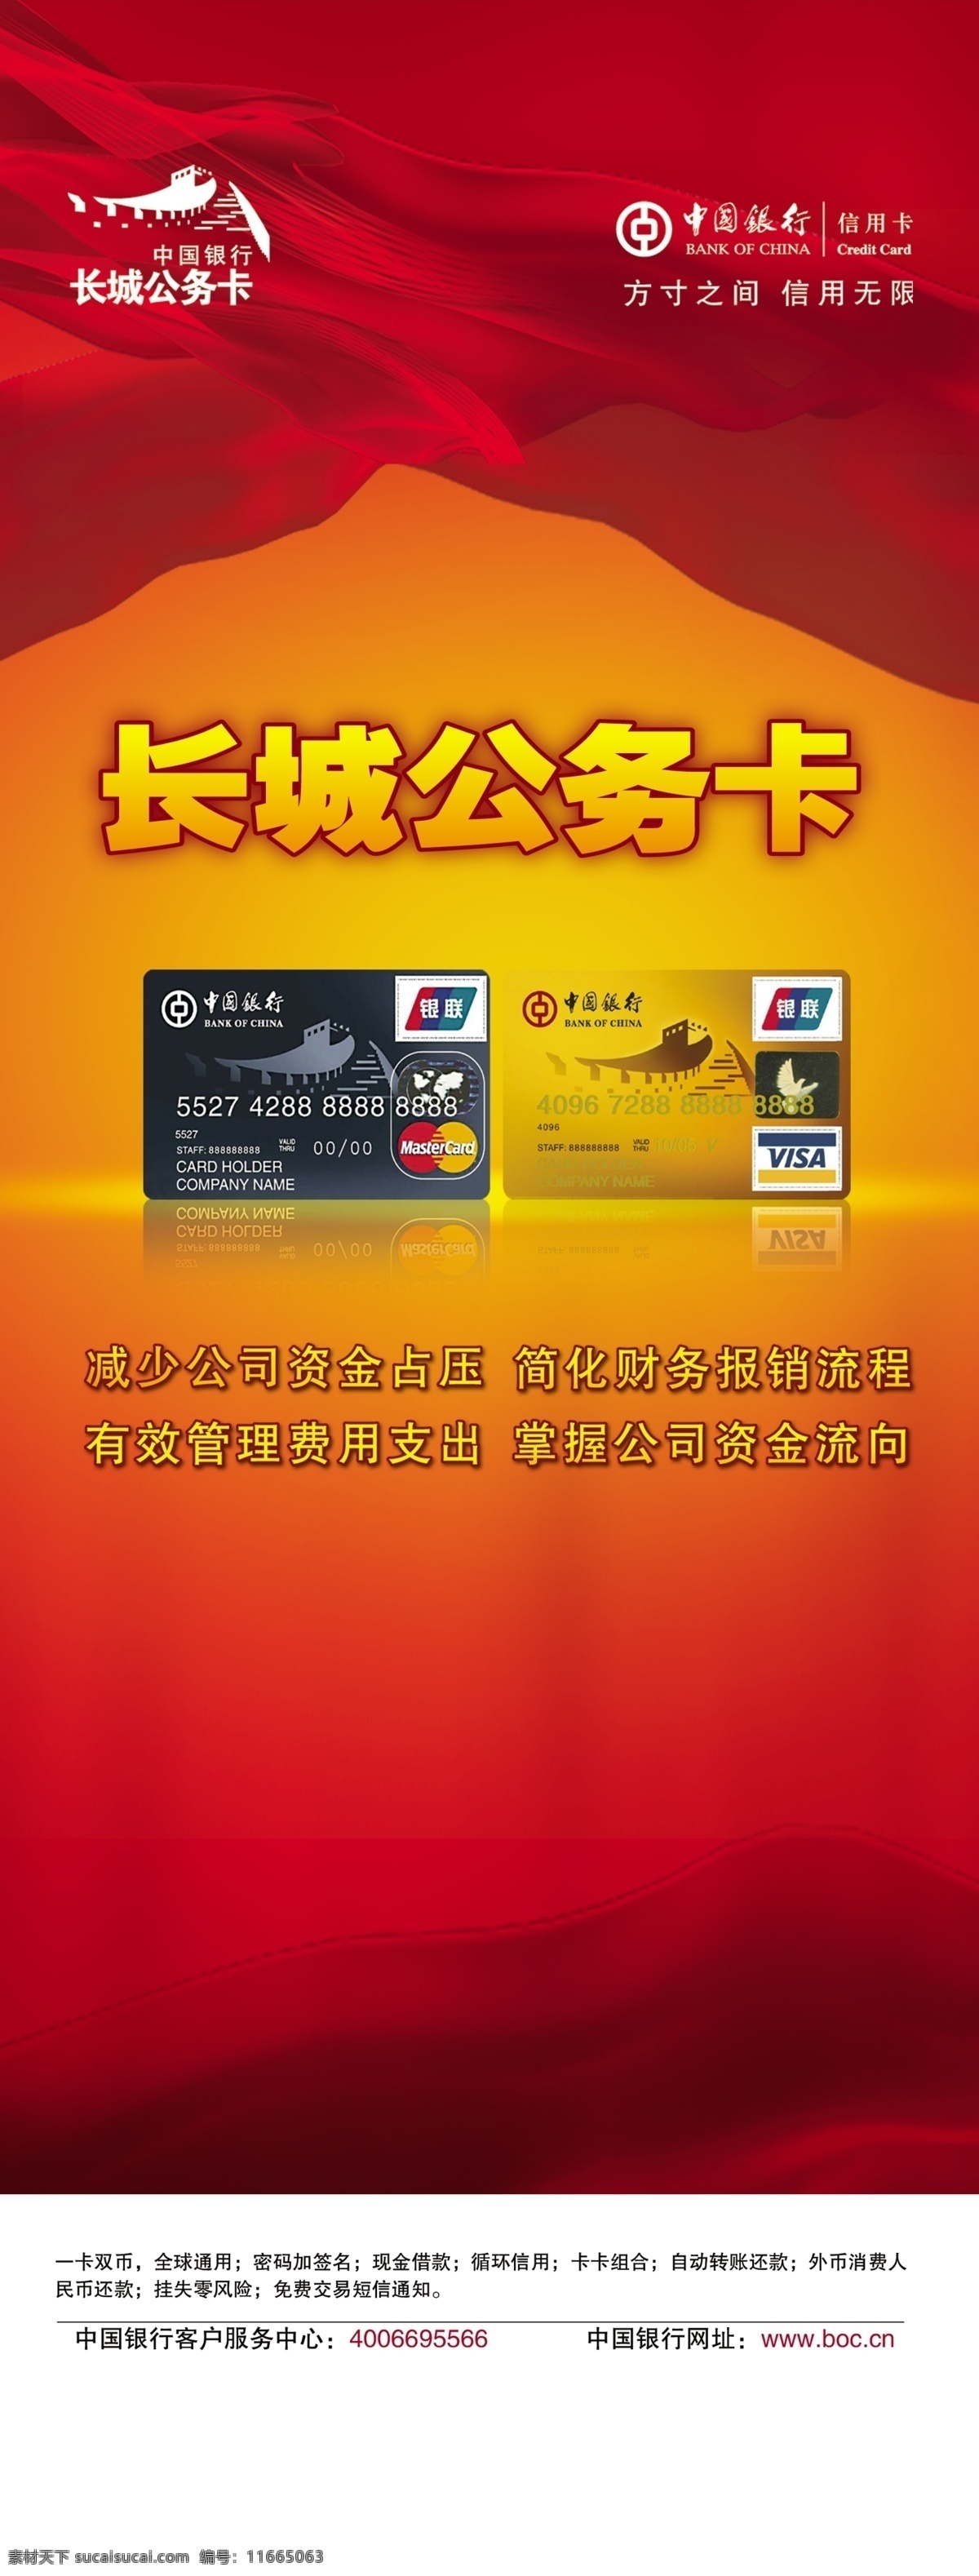 中国银行 长城 公务 卡 公务卡 分层psd 设计素材 中国银行卡 分层 源文件库